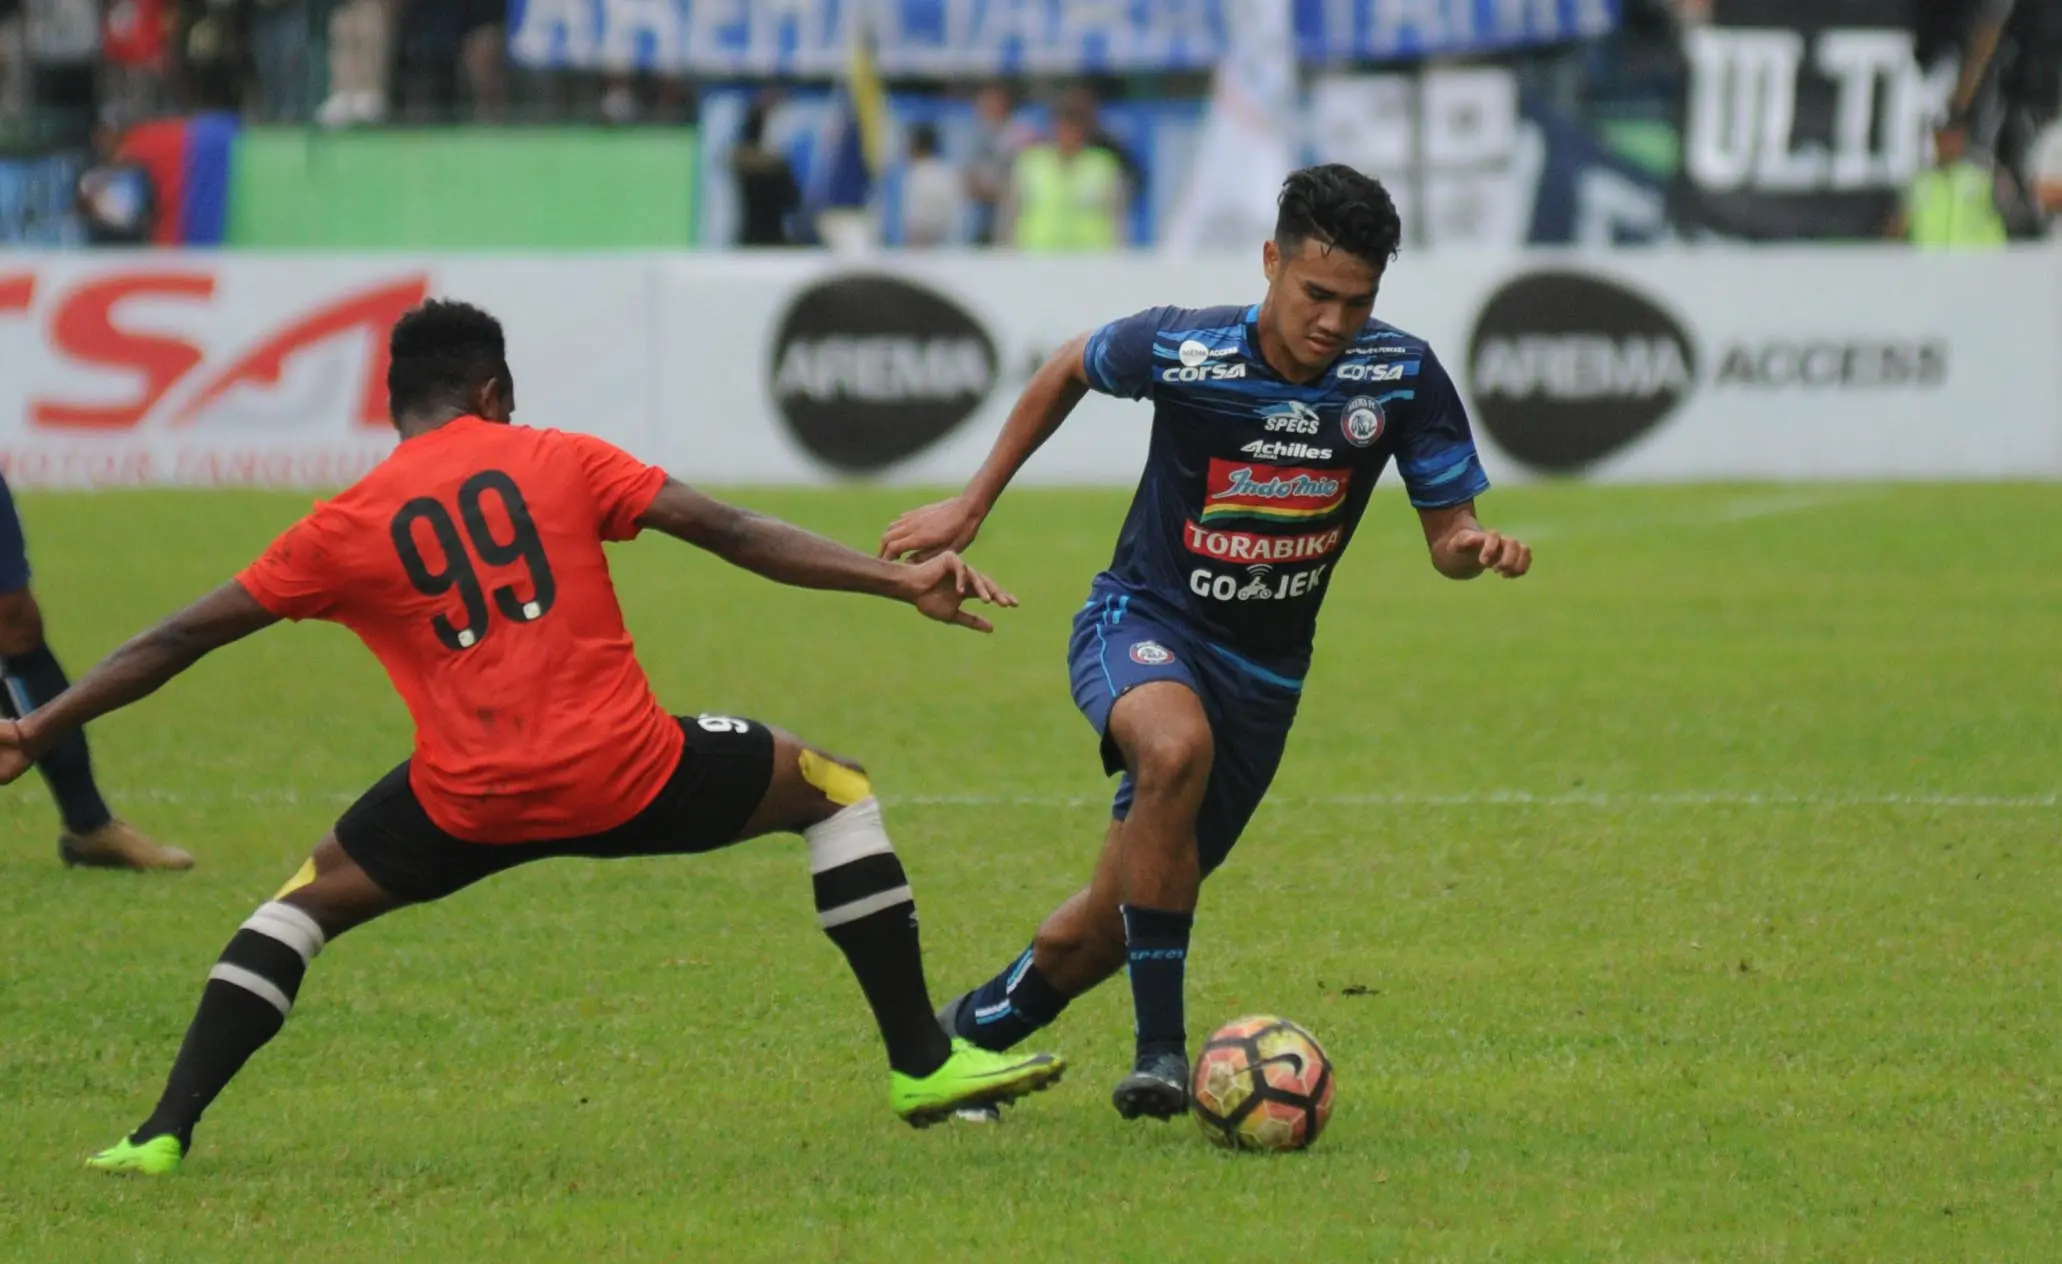 Gelandang muda Arema, M. Rafli, mencetak gol perdana semenjak bergabung dengan tim Singo Edan. (Bola.com/wan Setiawan)